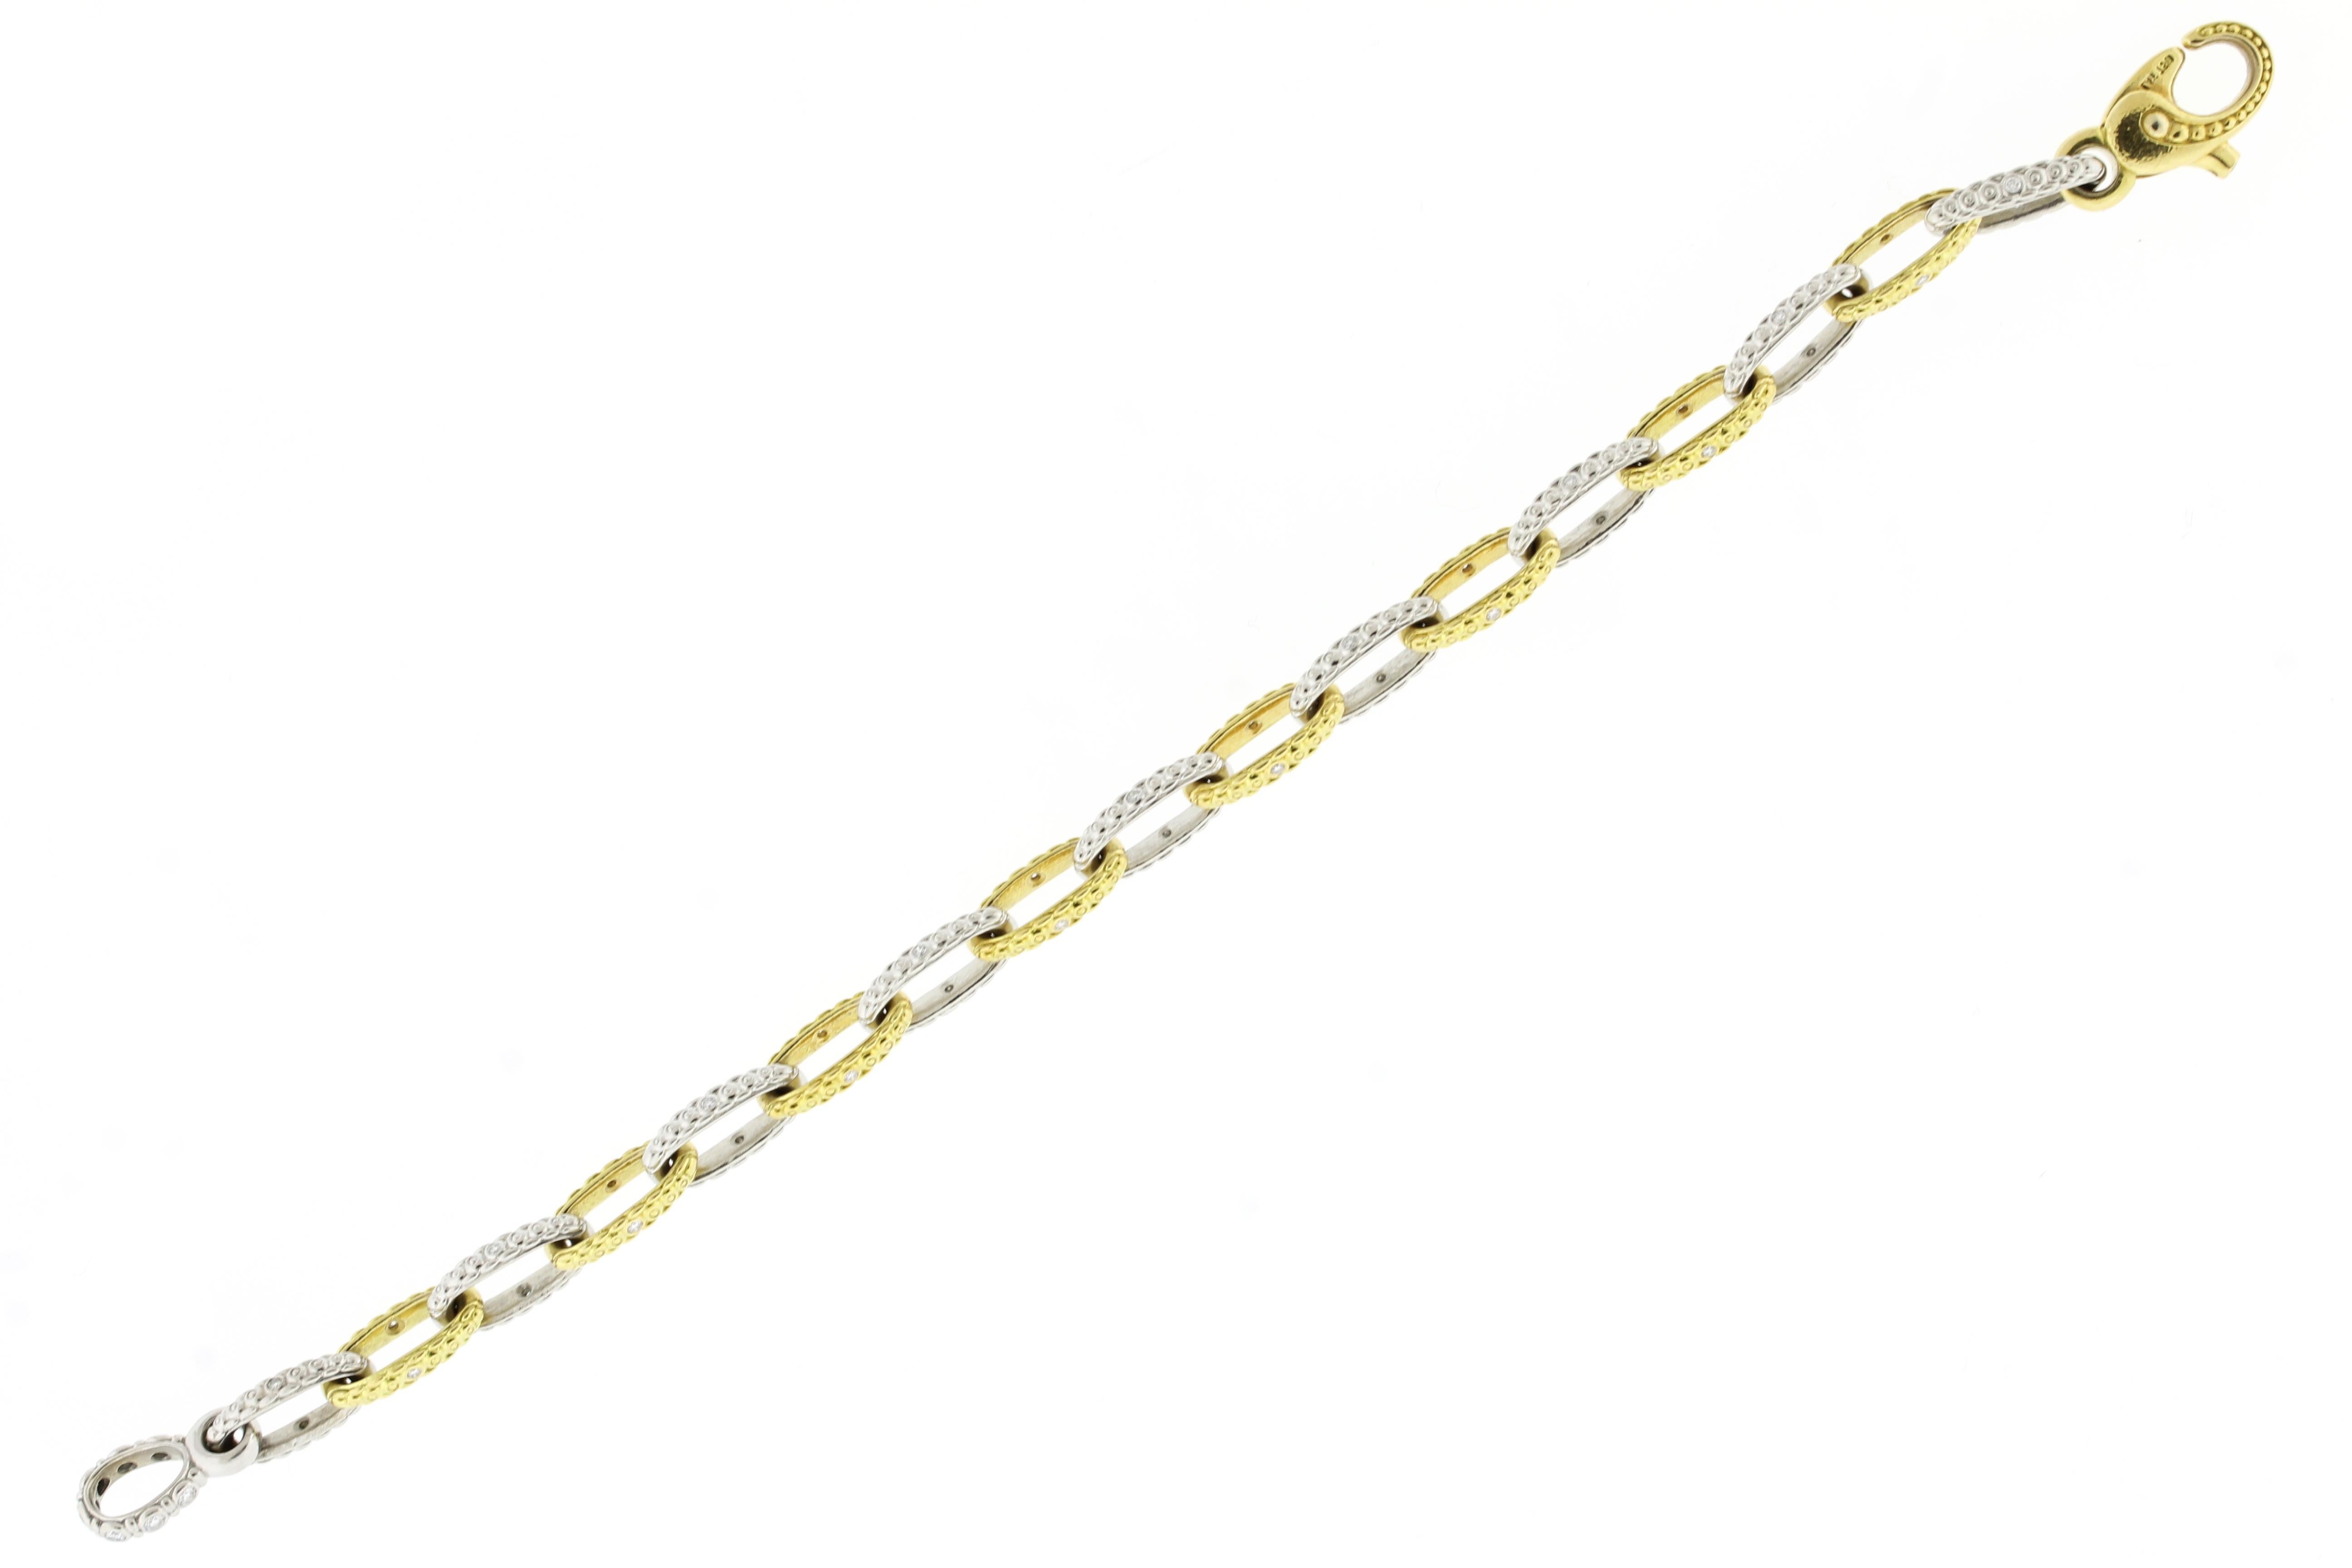 Brilliant Cut Alex Sepkus “Victorian” Platinum and Gold Chain Bracelet with Diamonds